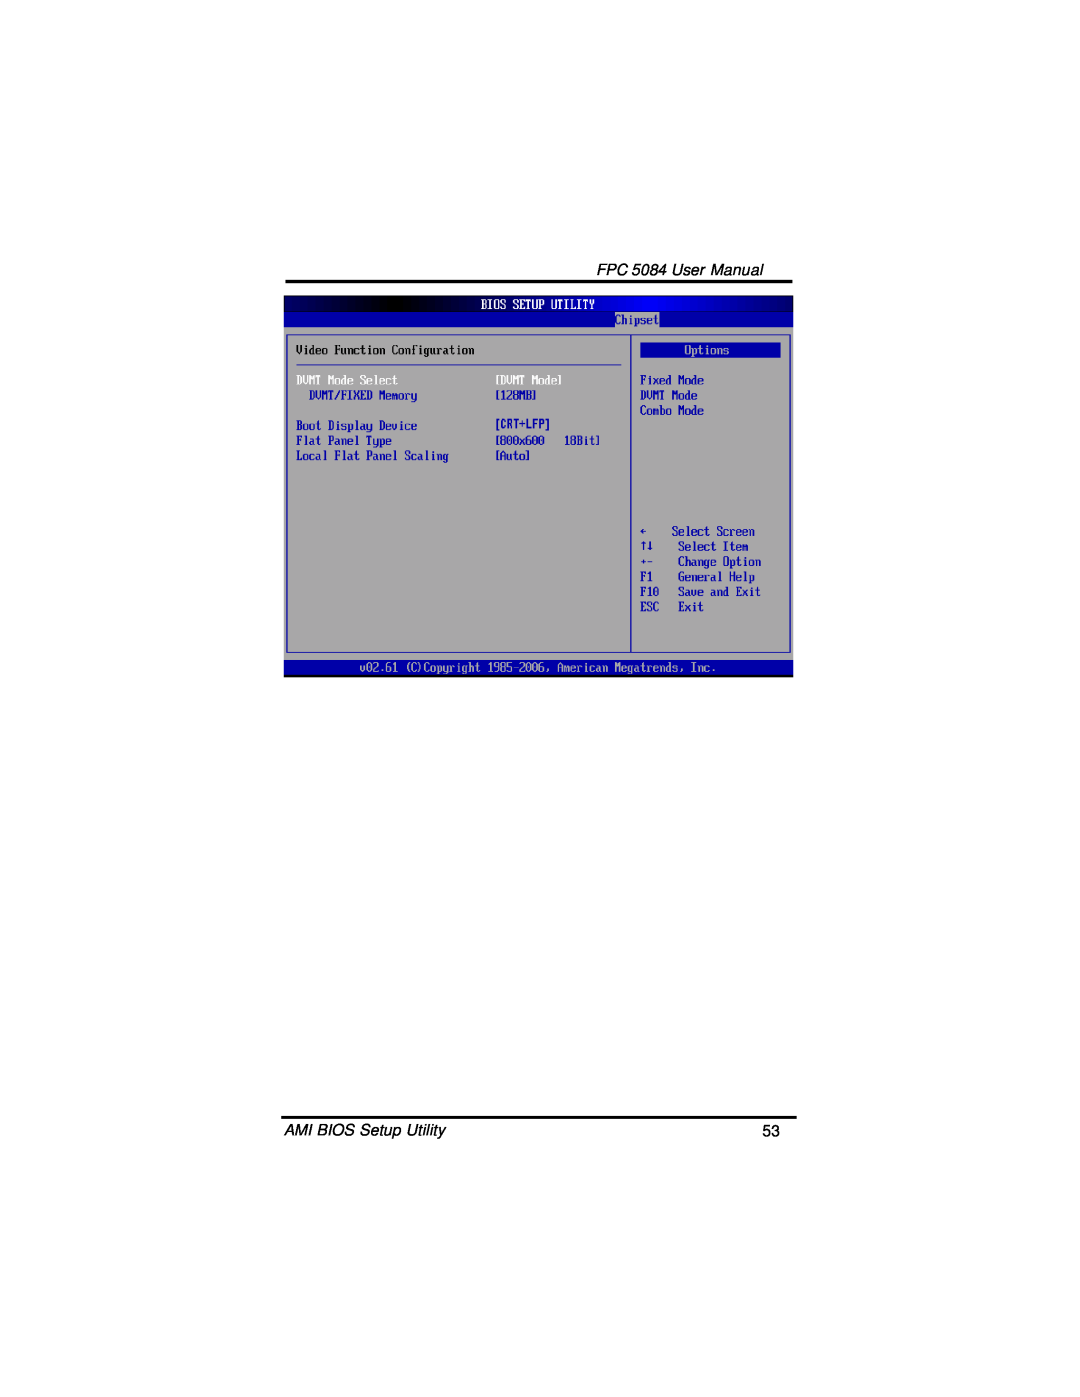 Intel N270 user manual FPC 5084 User Manual, AMI BIOS Setup Utility 